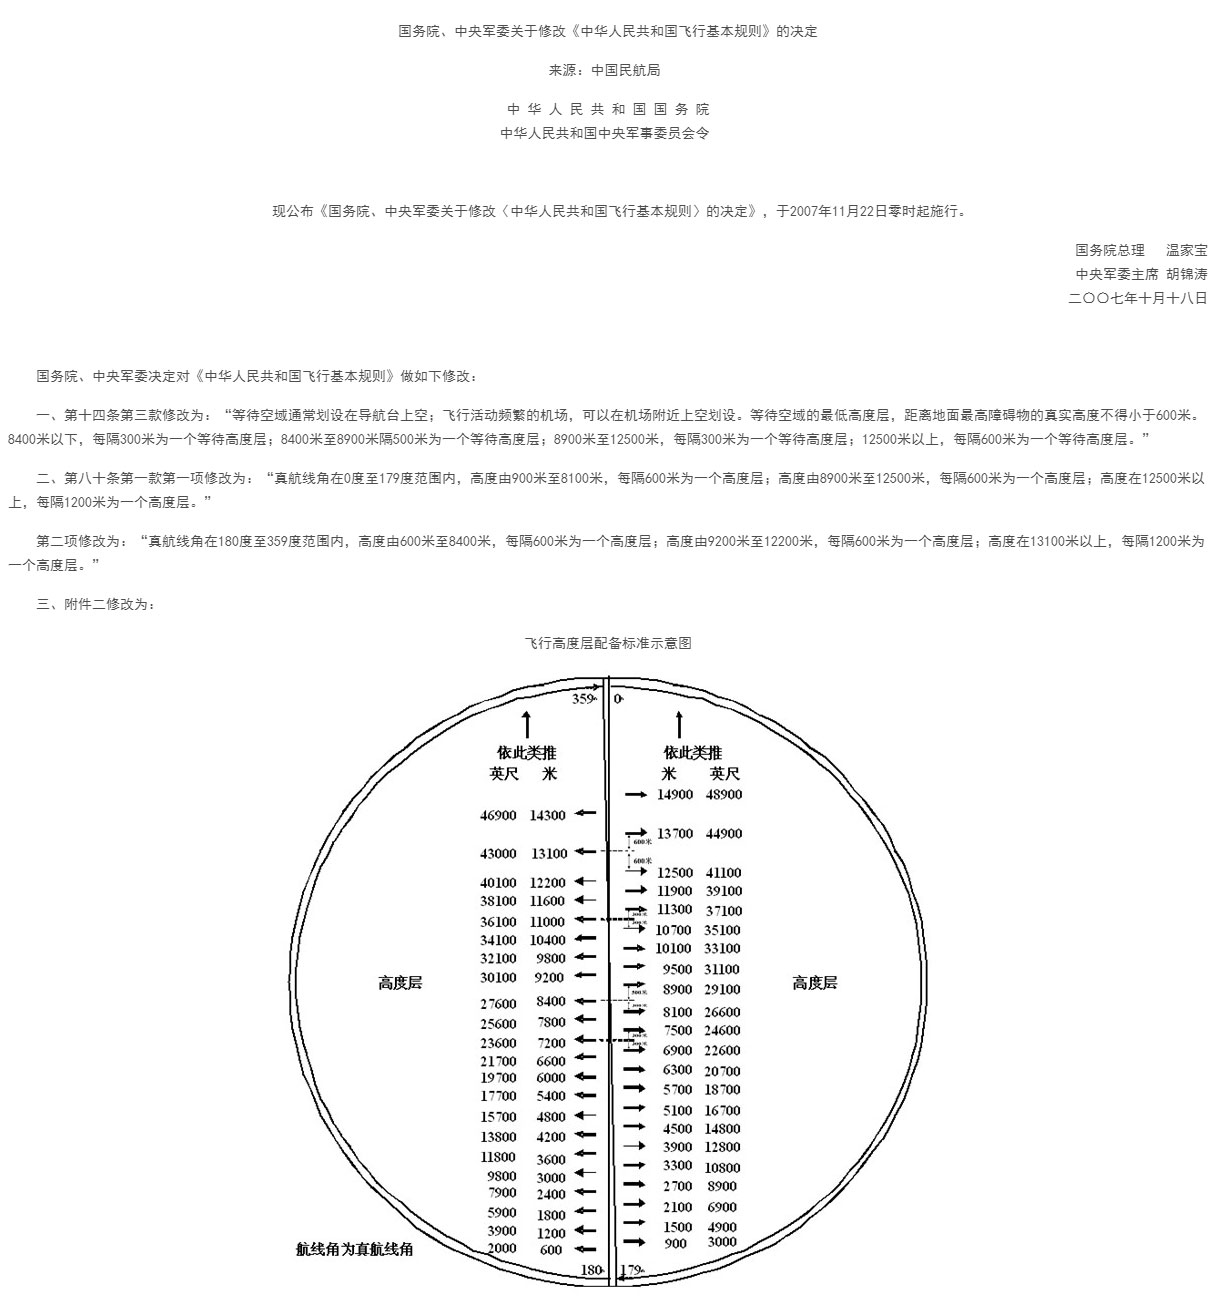 【法例法规】国务院、中央军委关于修改《中华人民共和国飞行基本规则》的决定